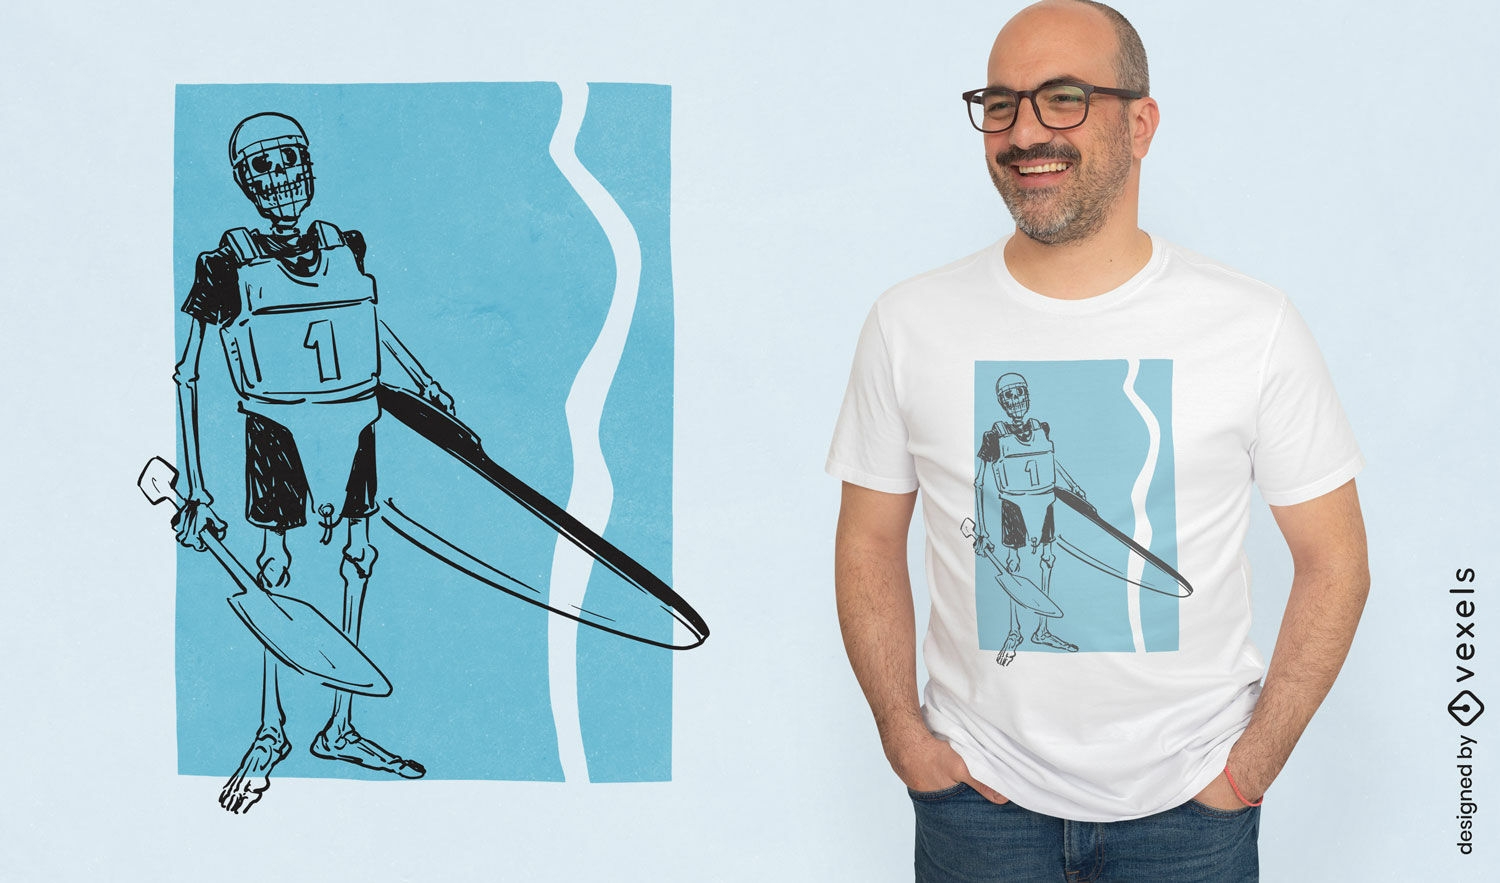 Diseño de camiseta de jugador de canoepolo esqueleto.